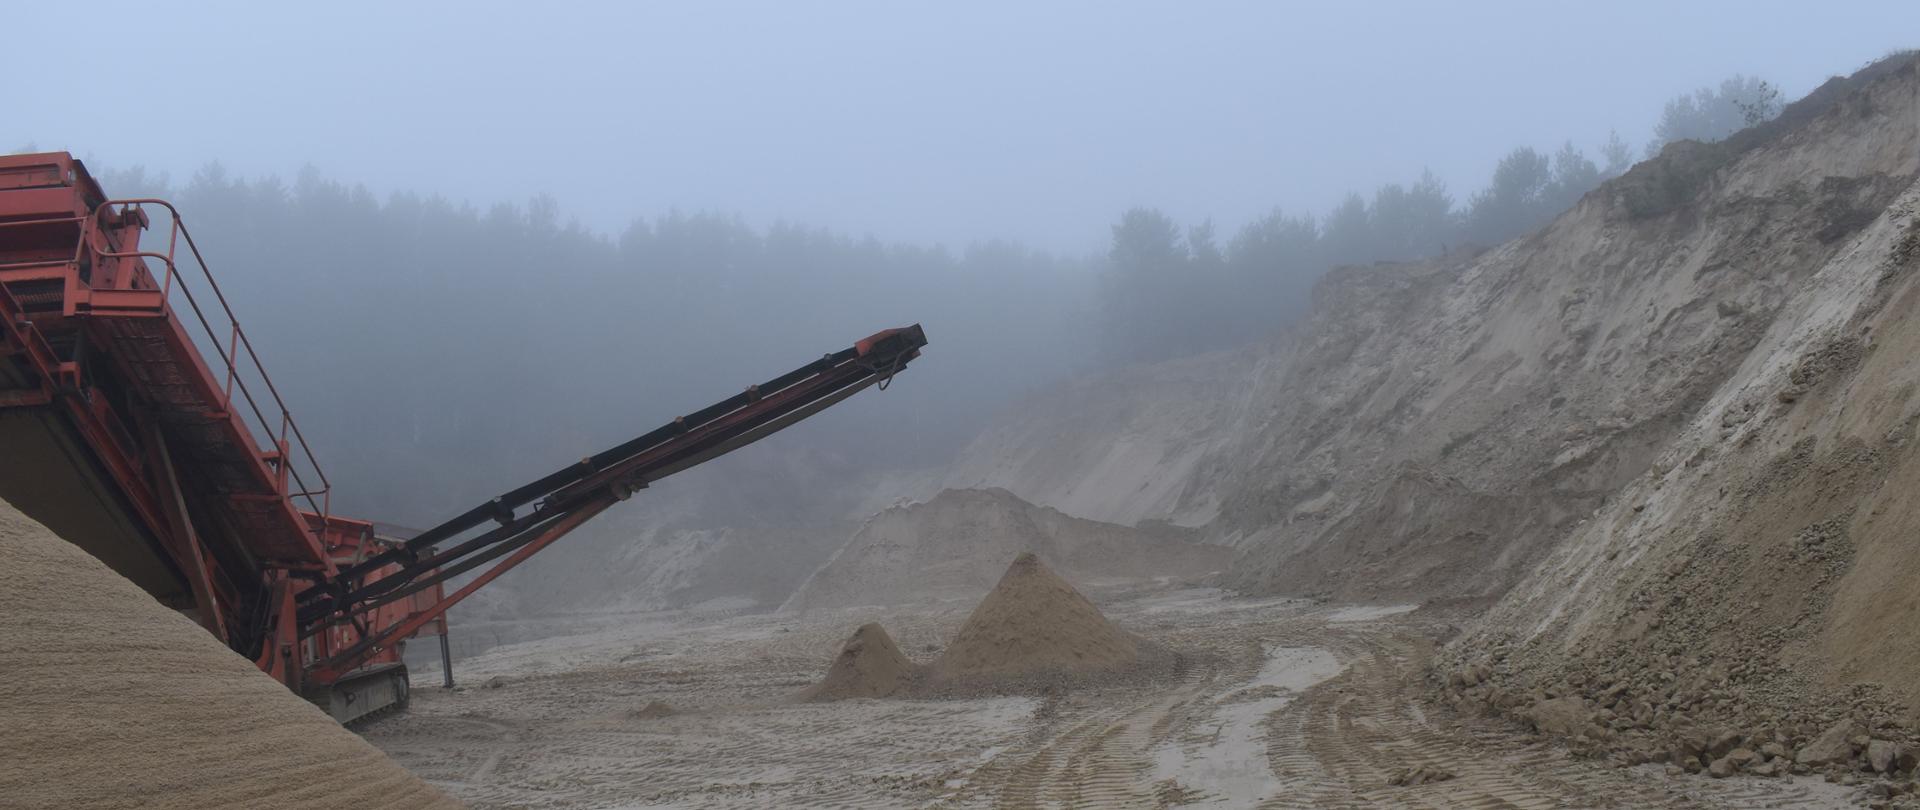 Taśmociąg pracuje na poeksploatacyjnym wyrobisku piasku.